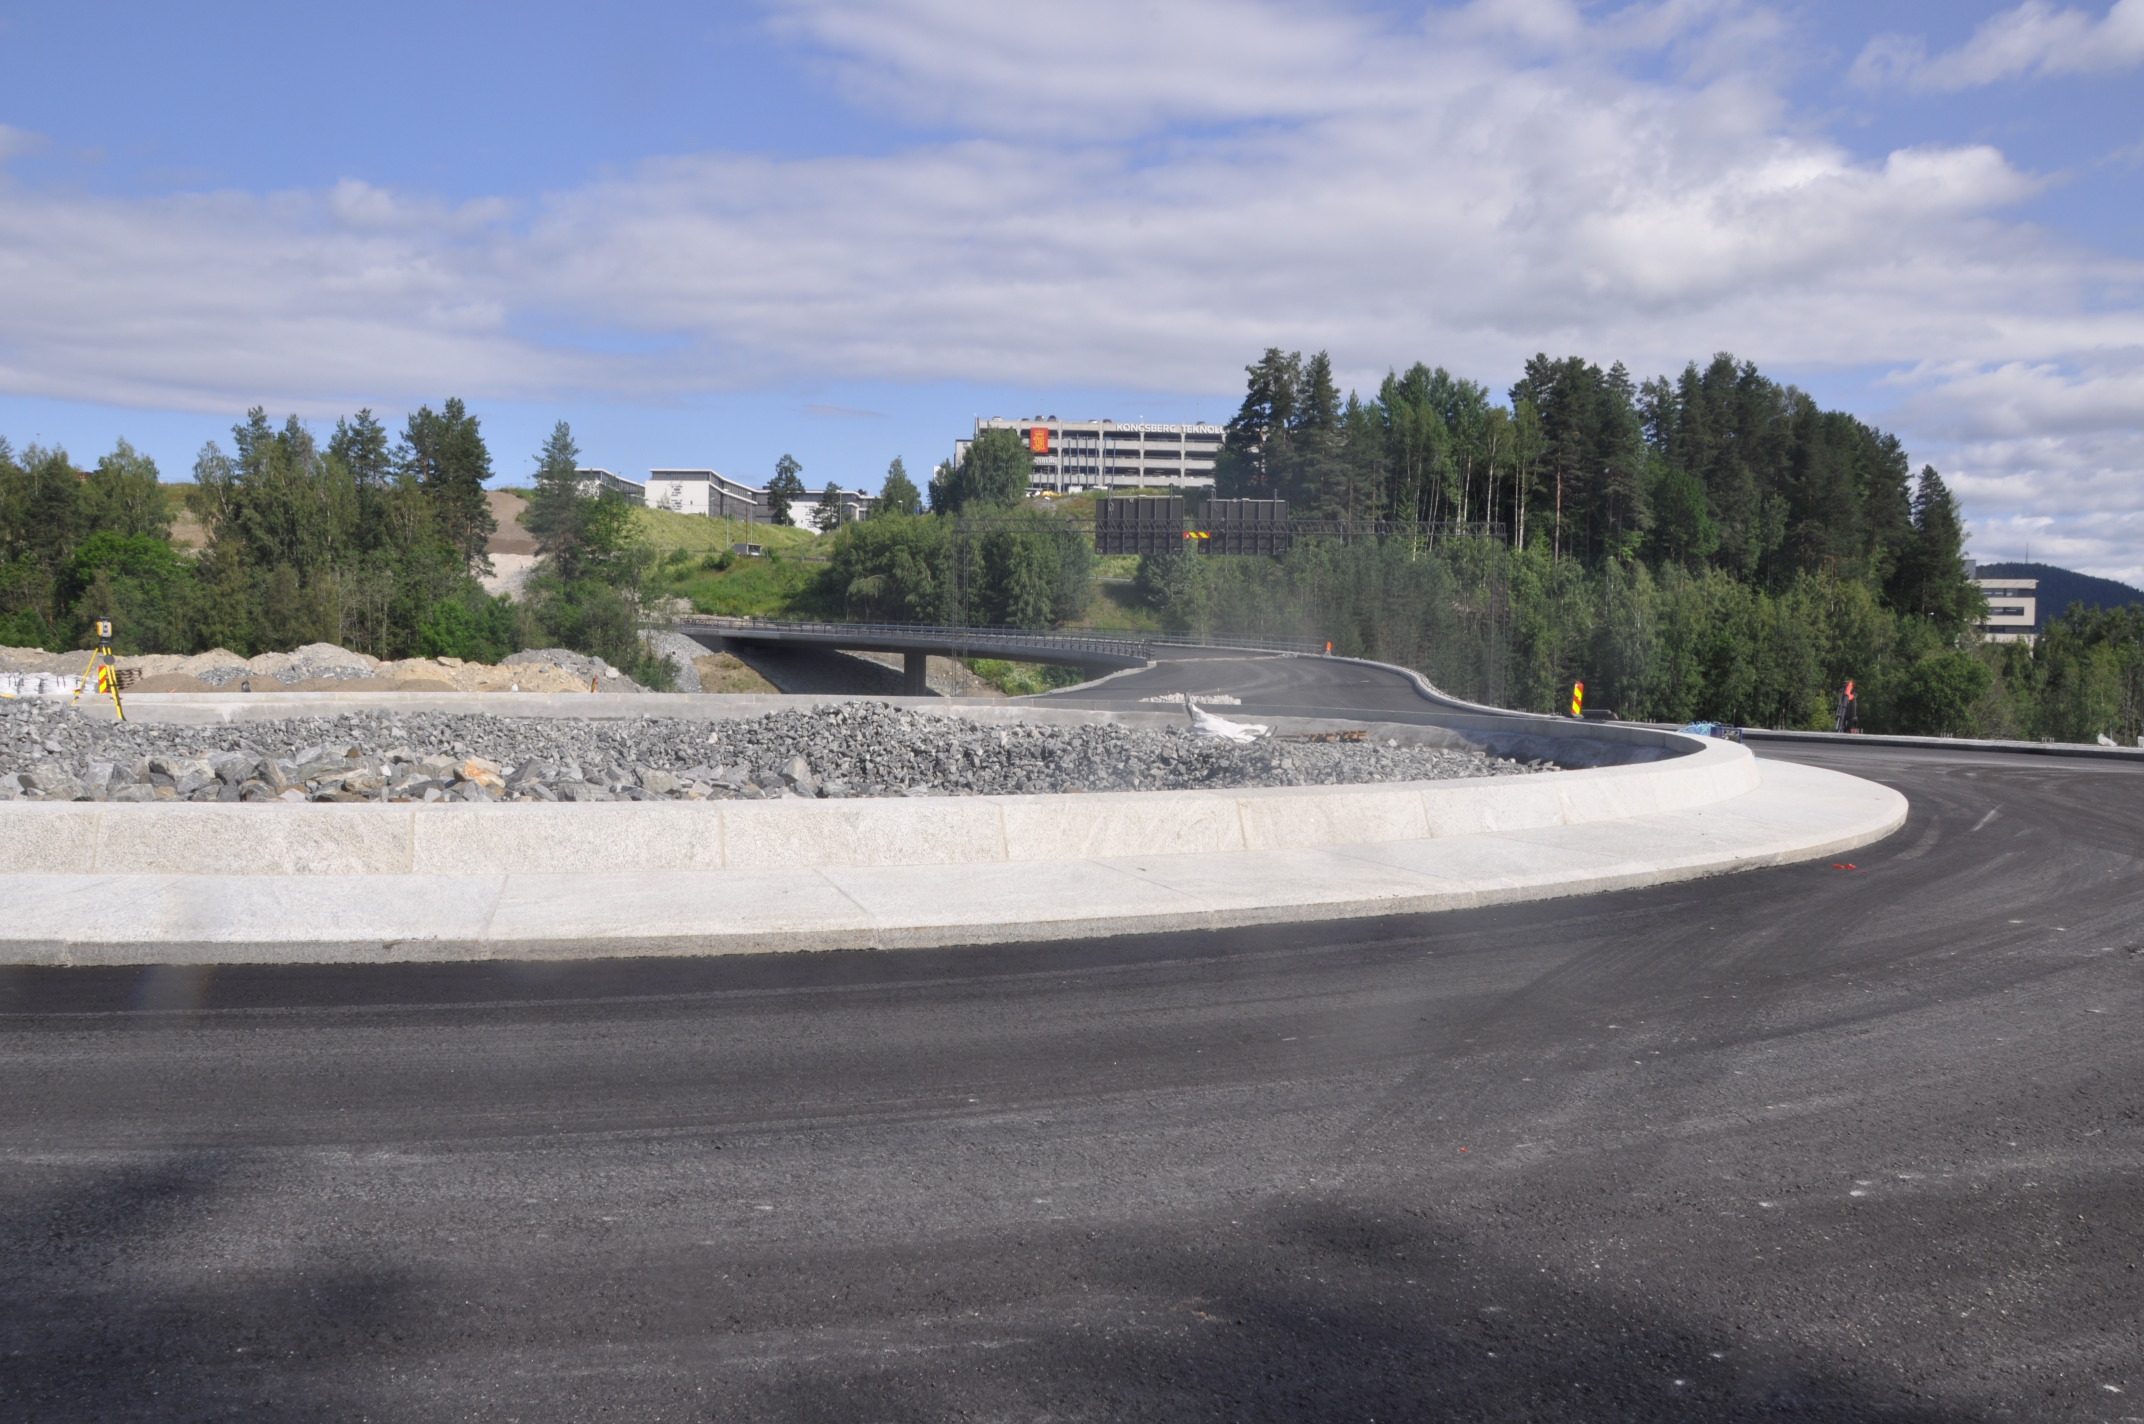 Vegen opp fra Sellikdalen til Teknologiparken sett fra renseanlegget. (Foto: Kjell Wold)